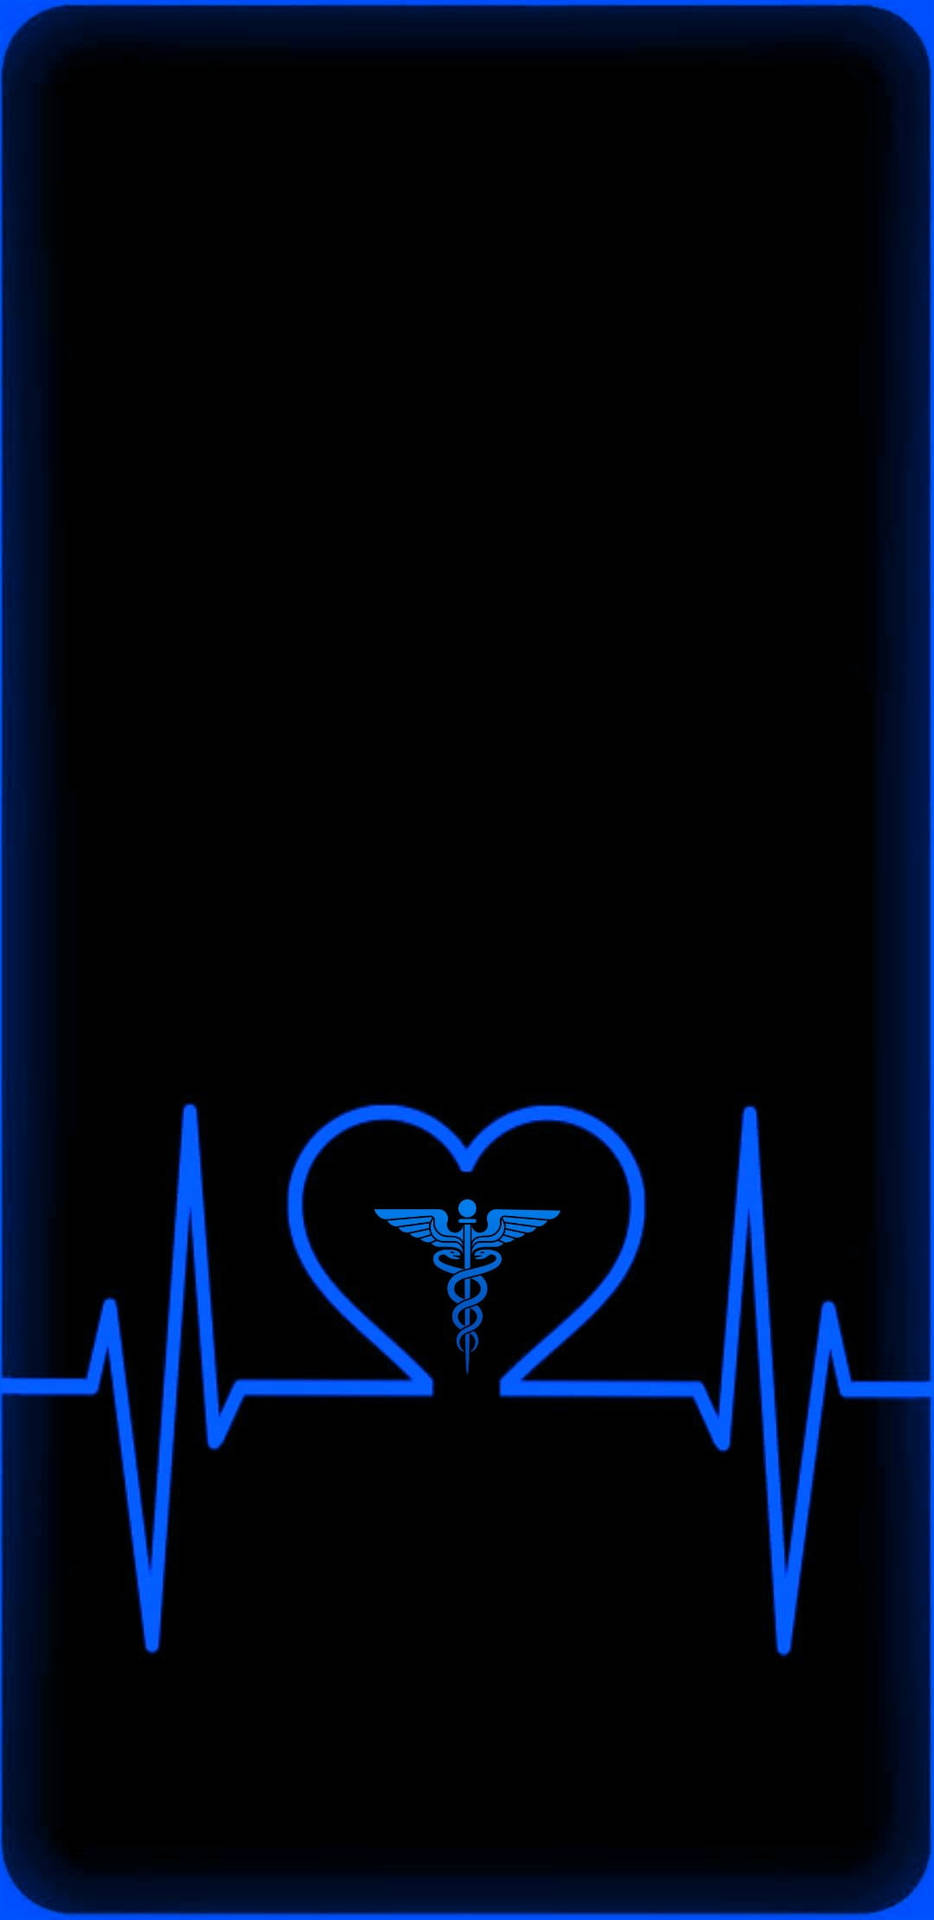 Mbbs Blue Heartbeat Art Wallpaper